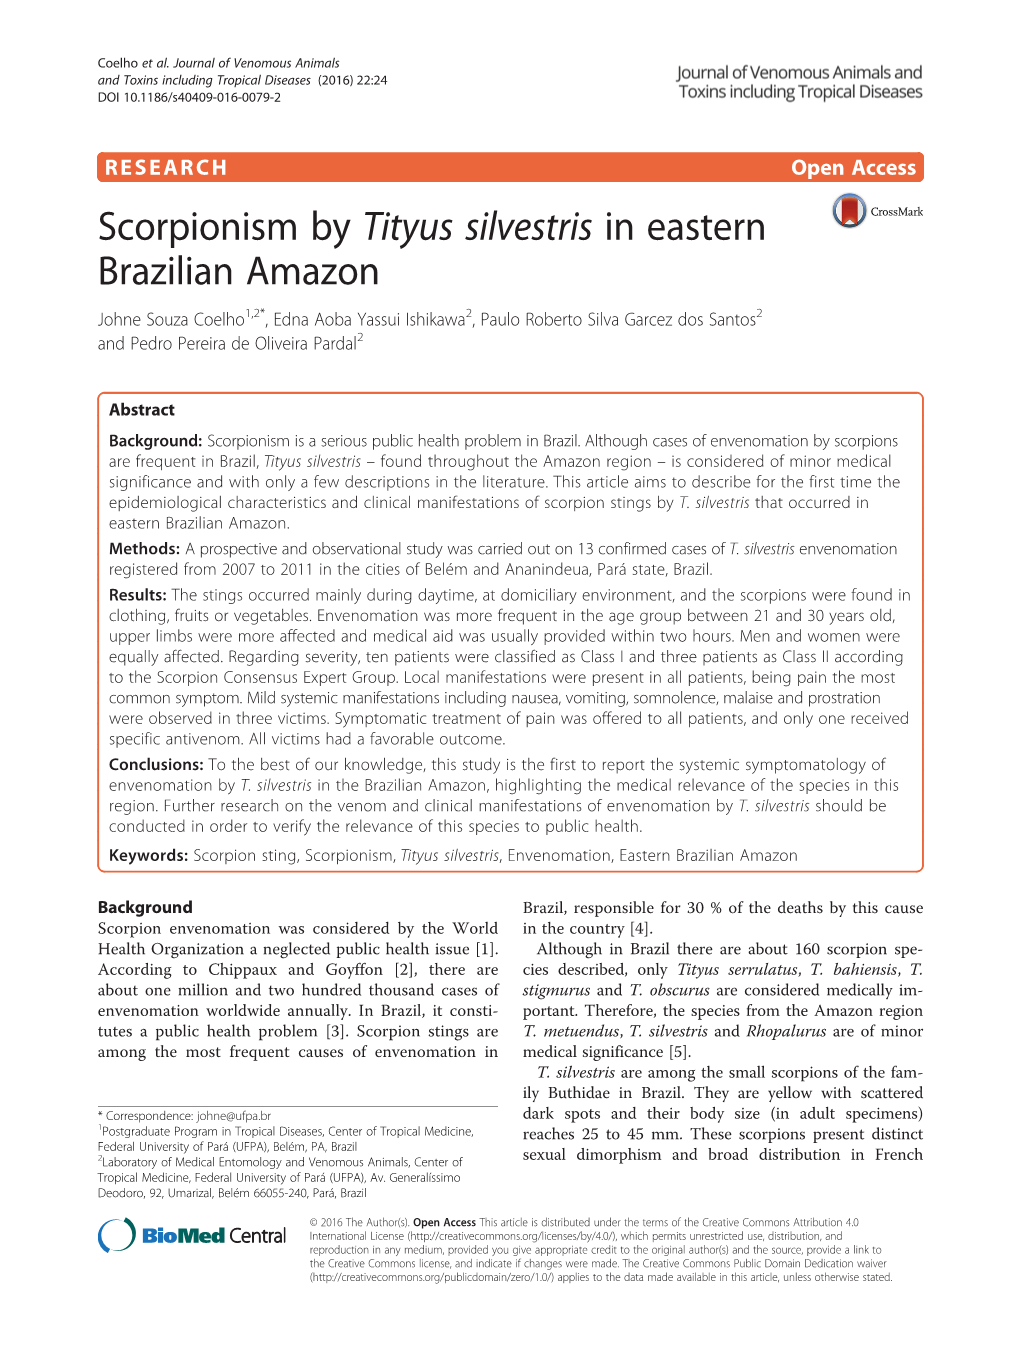 Scorpionism by Tityus Silvestris in Eastern Brazilian Amazon